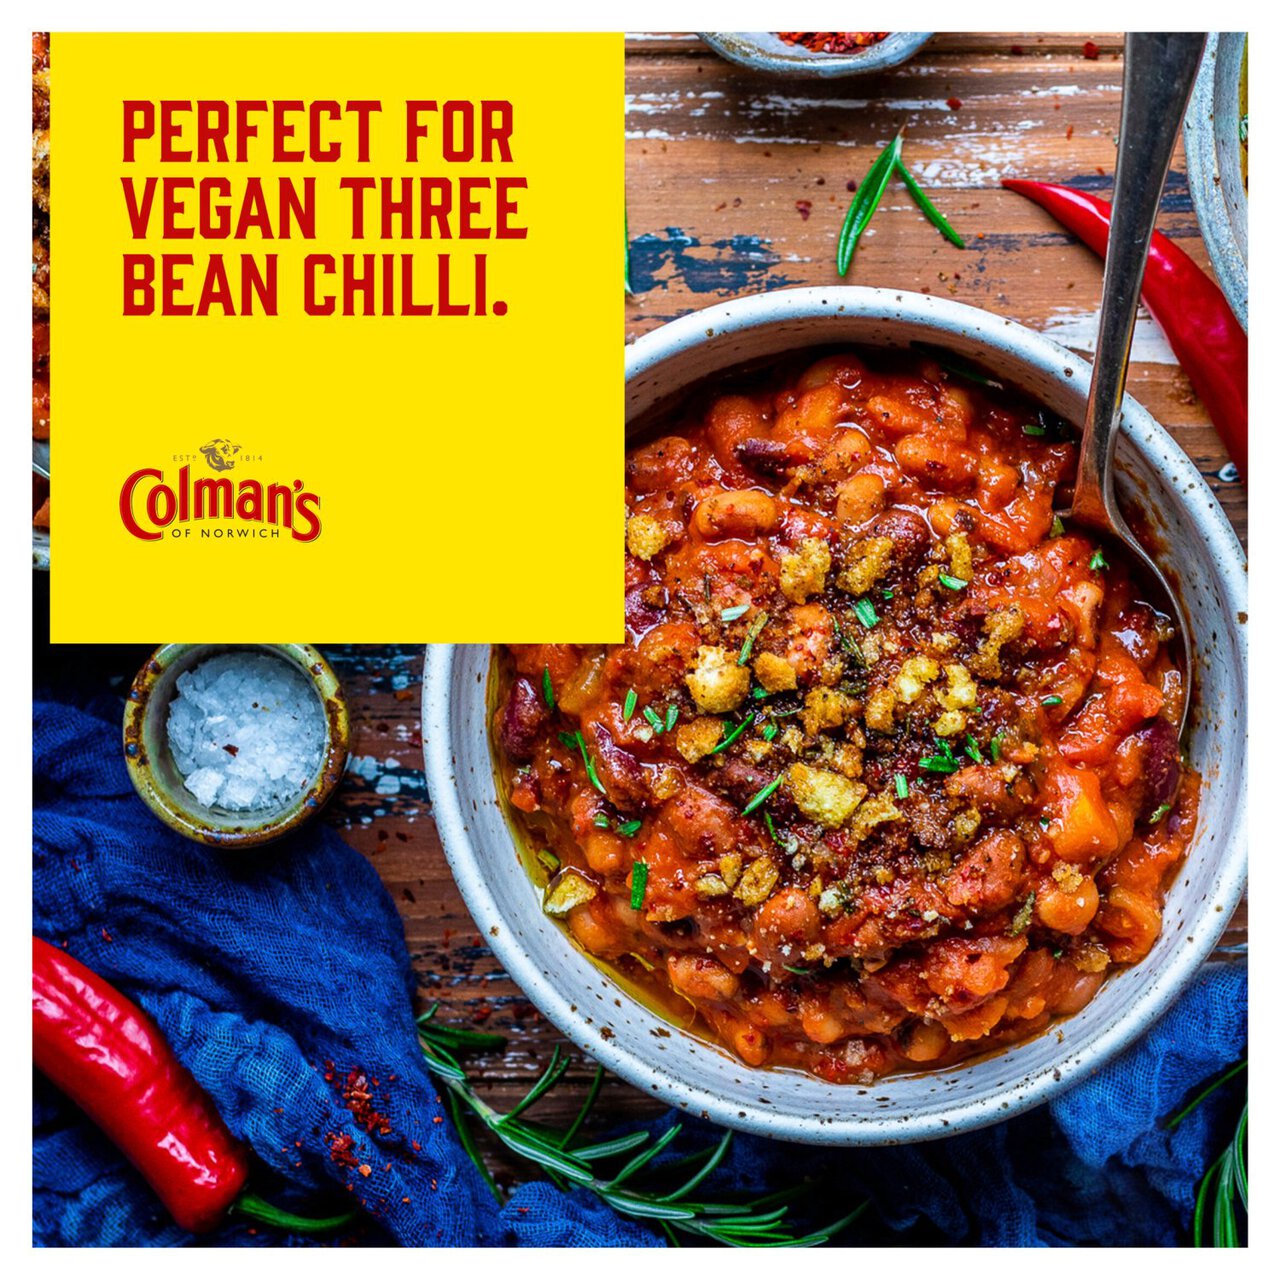 Colman's Chilli Con Carne Recipe Mix 50g